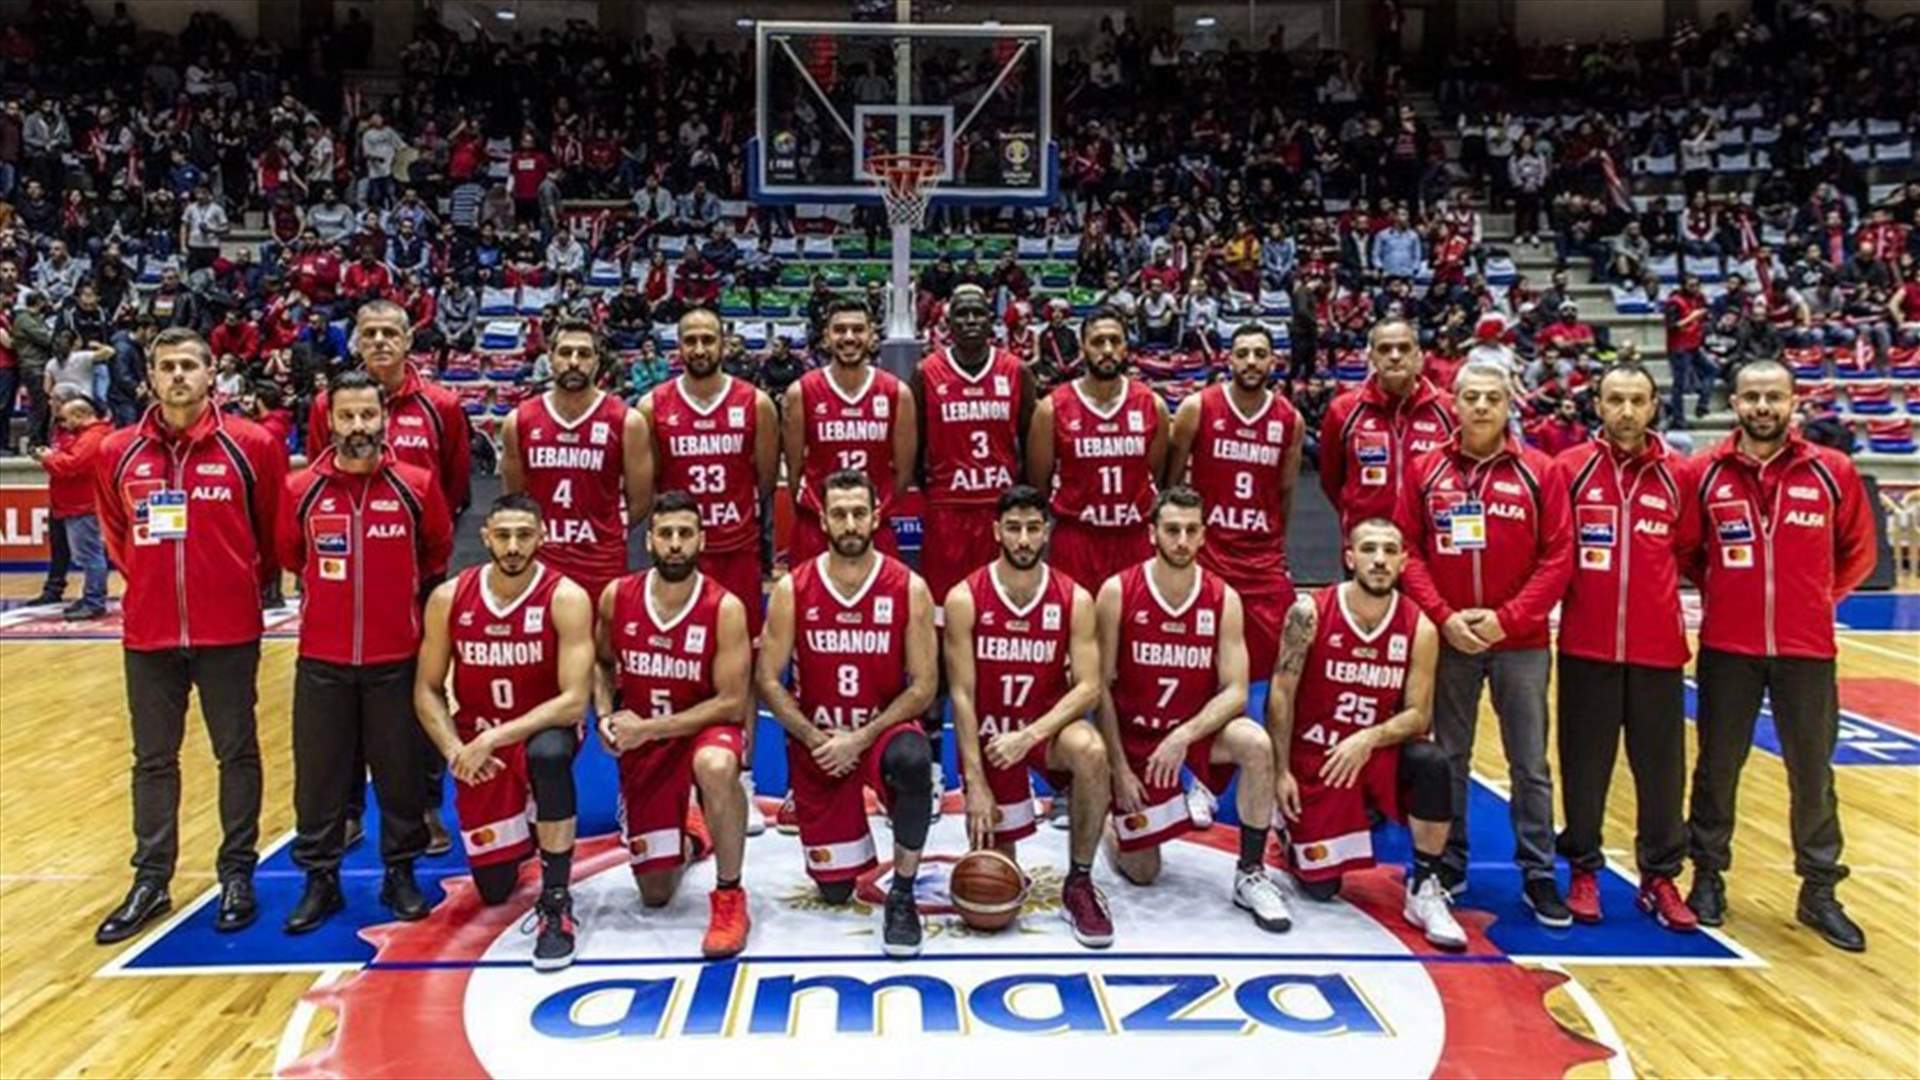 ما هي حظوظ تأهل منتخب لبنان الى كأس العالم ٢٠١٩ بكرة السلة؟